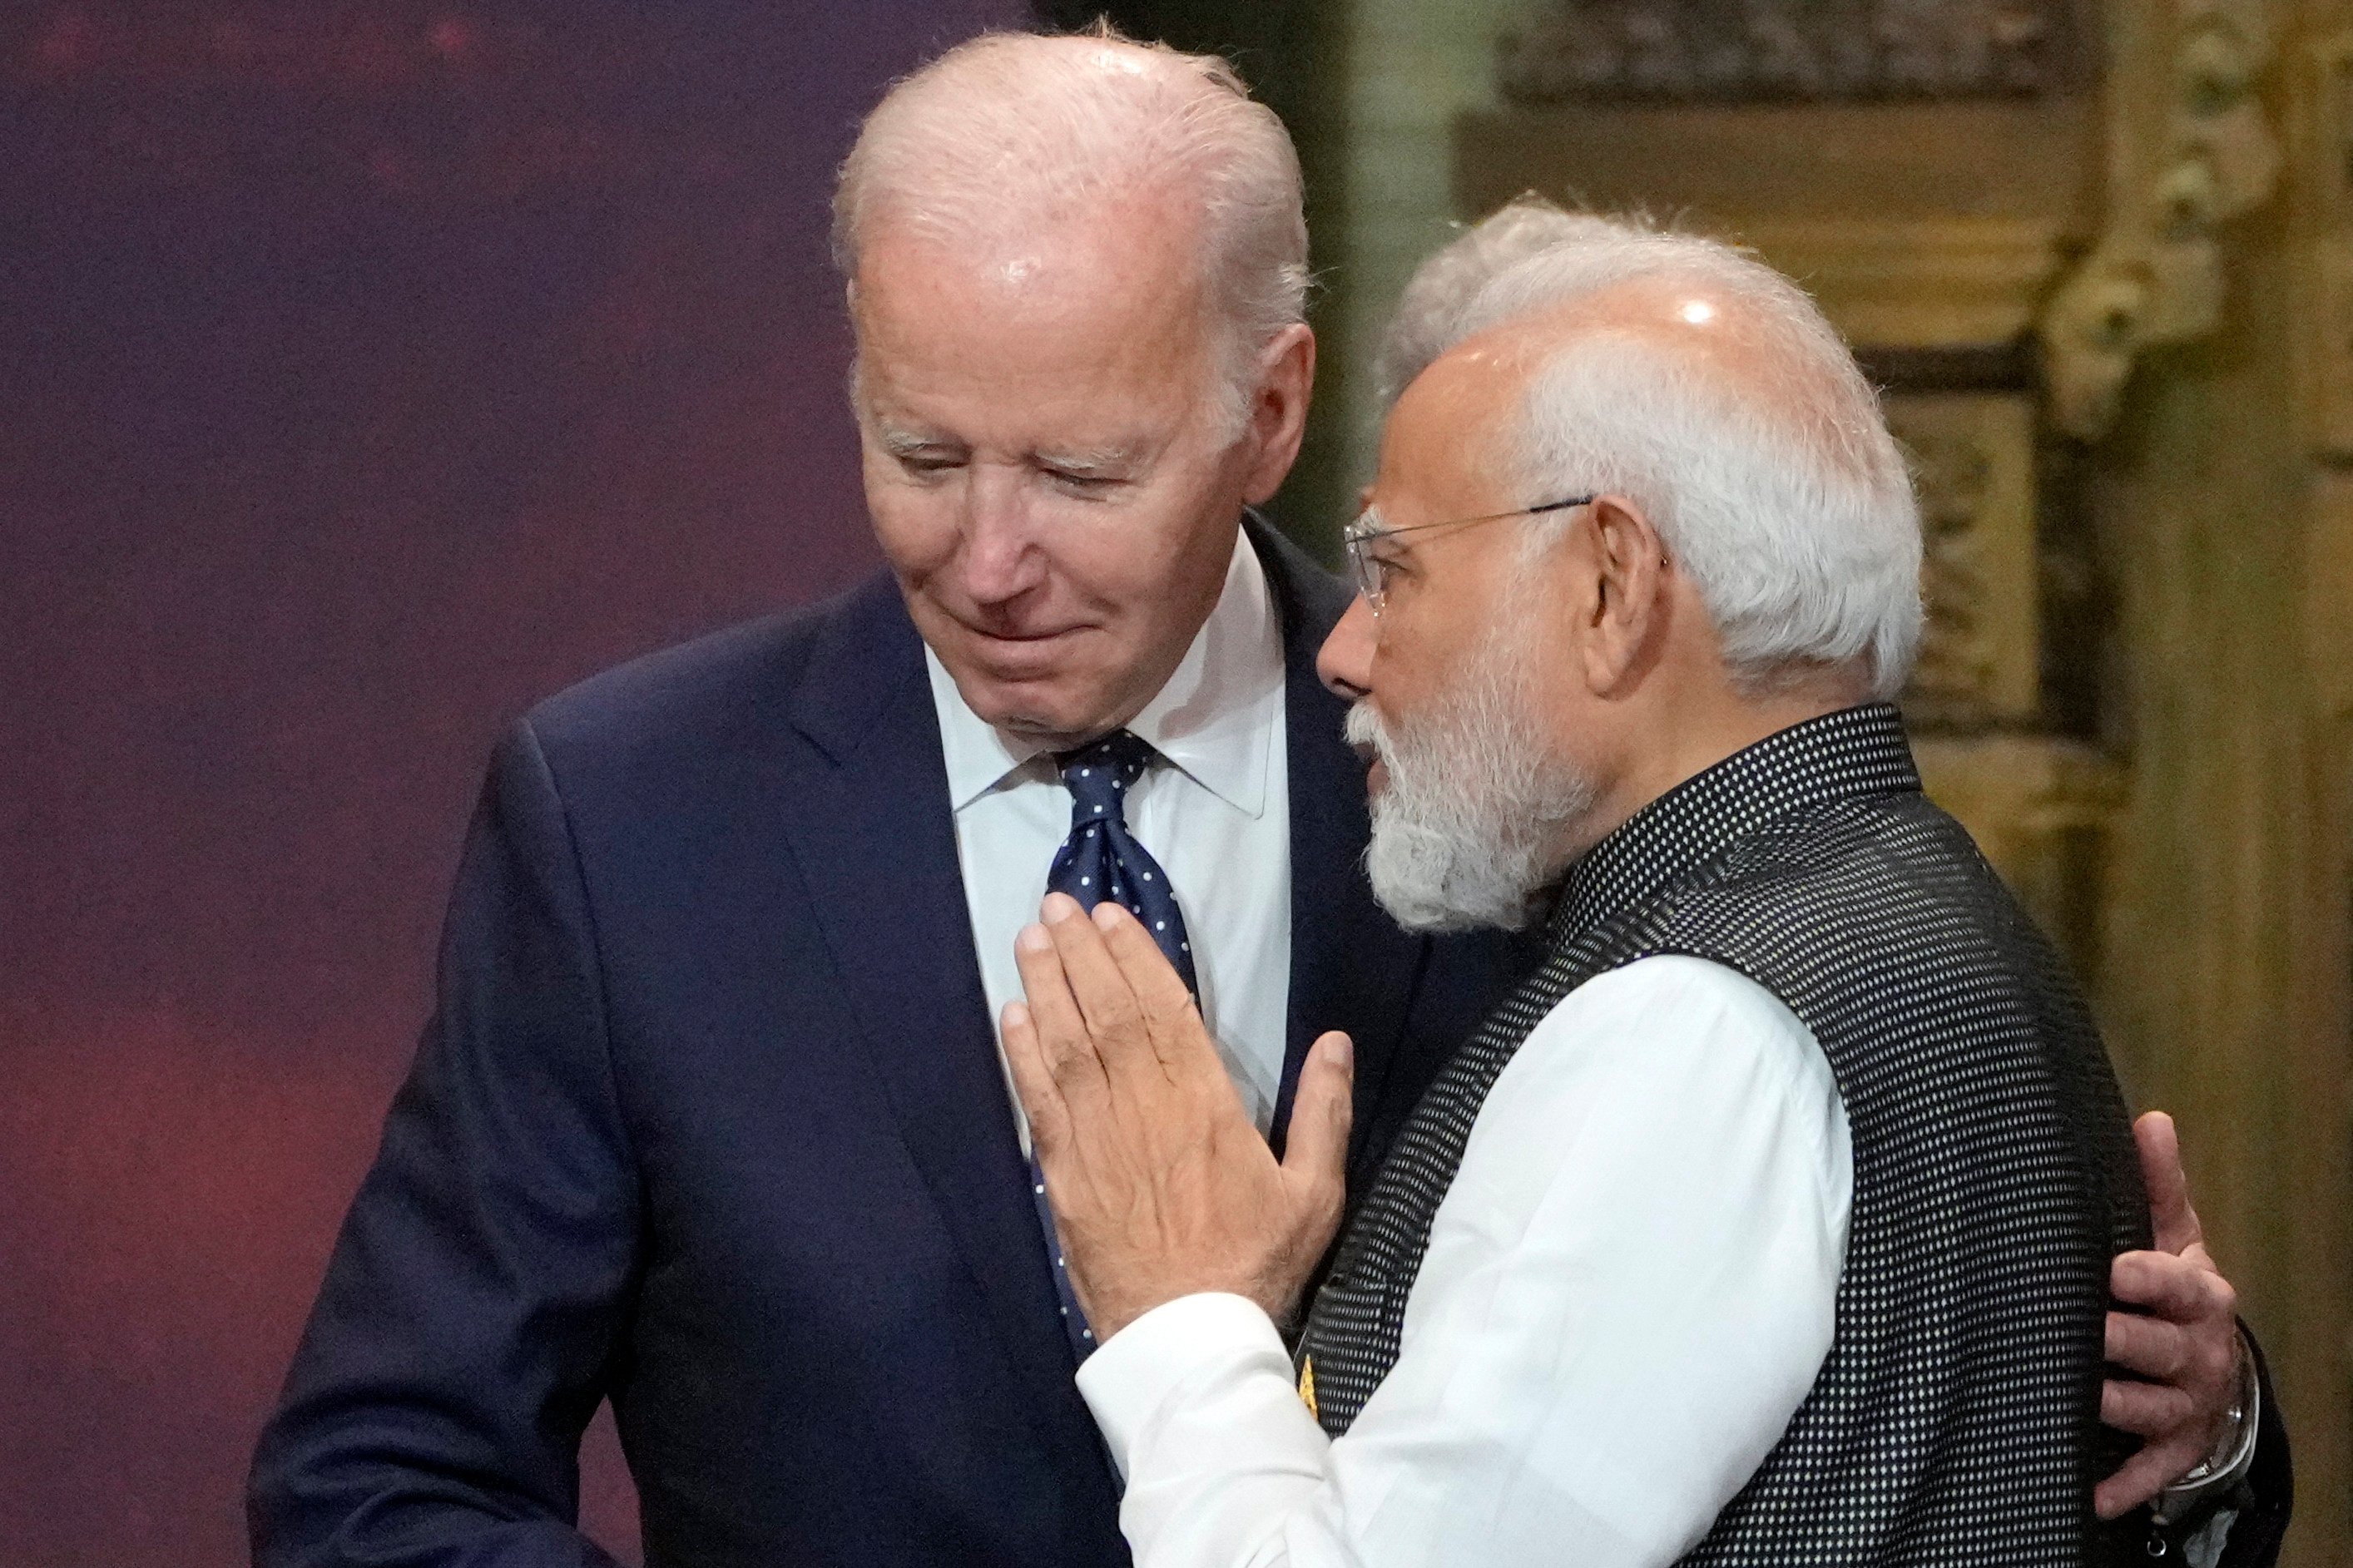 US President Joe Biden and India’s Prime Minister Narendra Modi at the G20 leaders summit in Bali in November 2022. Photo: AP